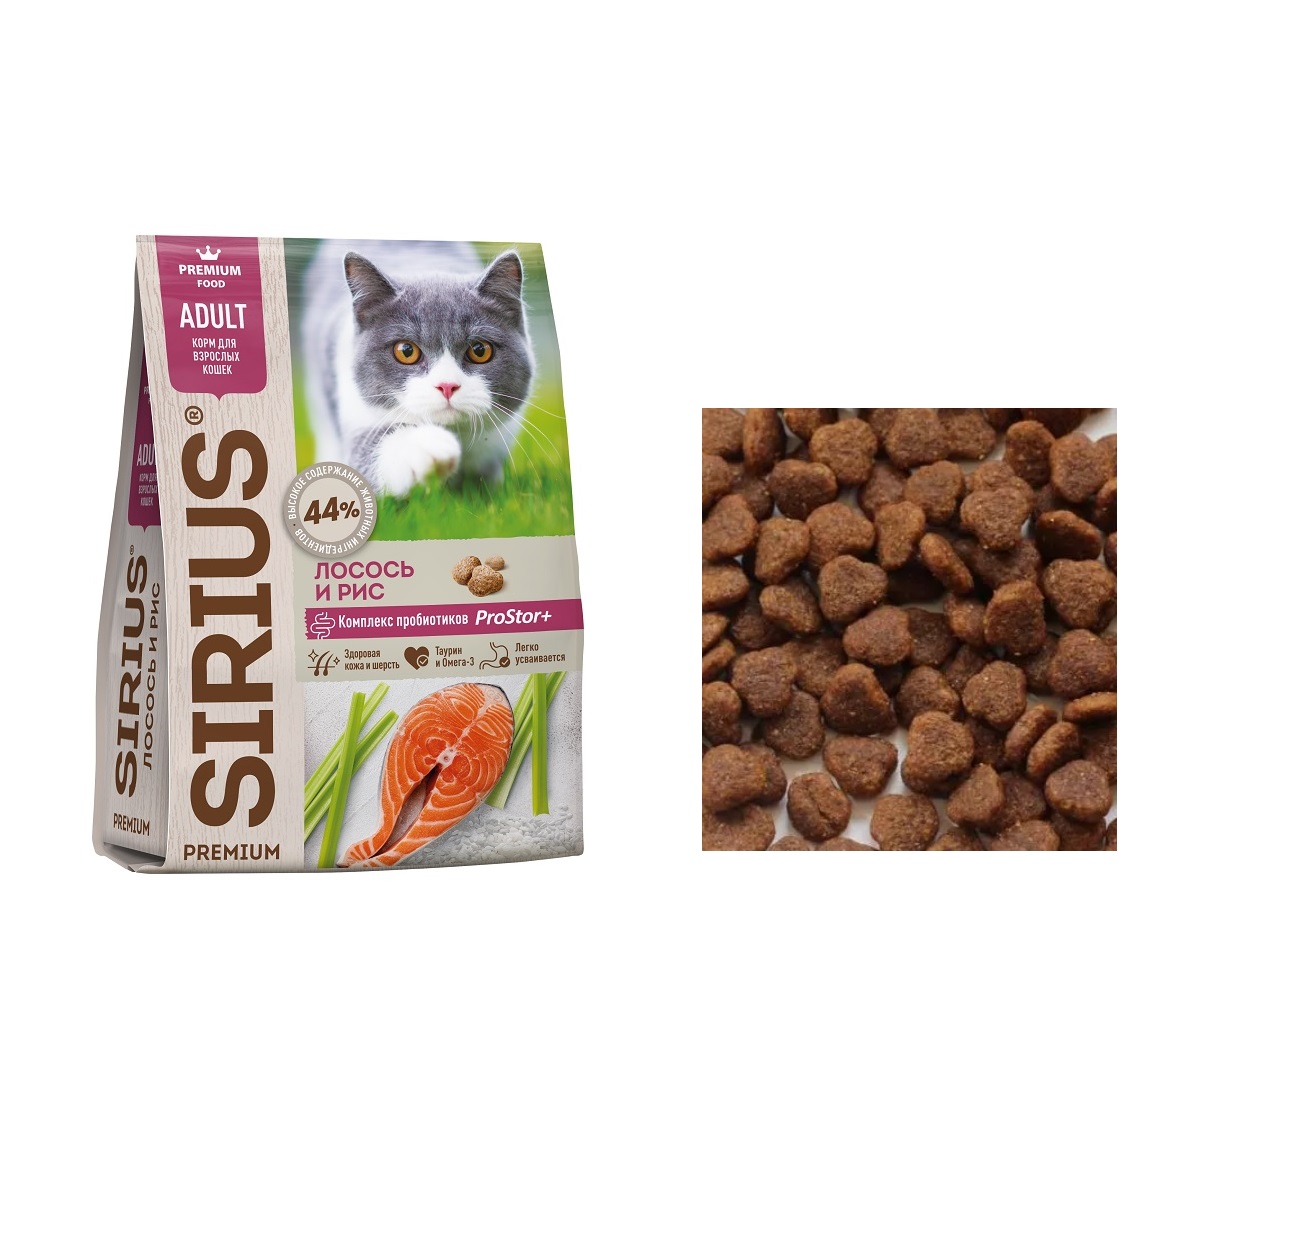 Сириус для кошек Лосось (Sirius), весовой 1кг (Sirius)